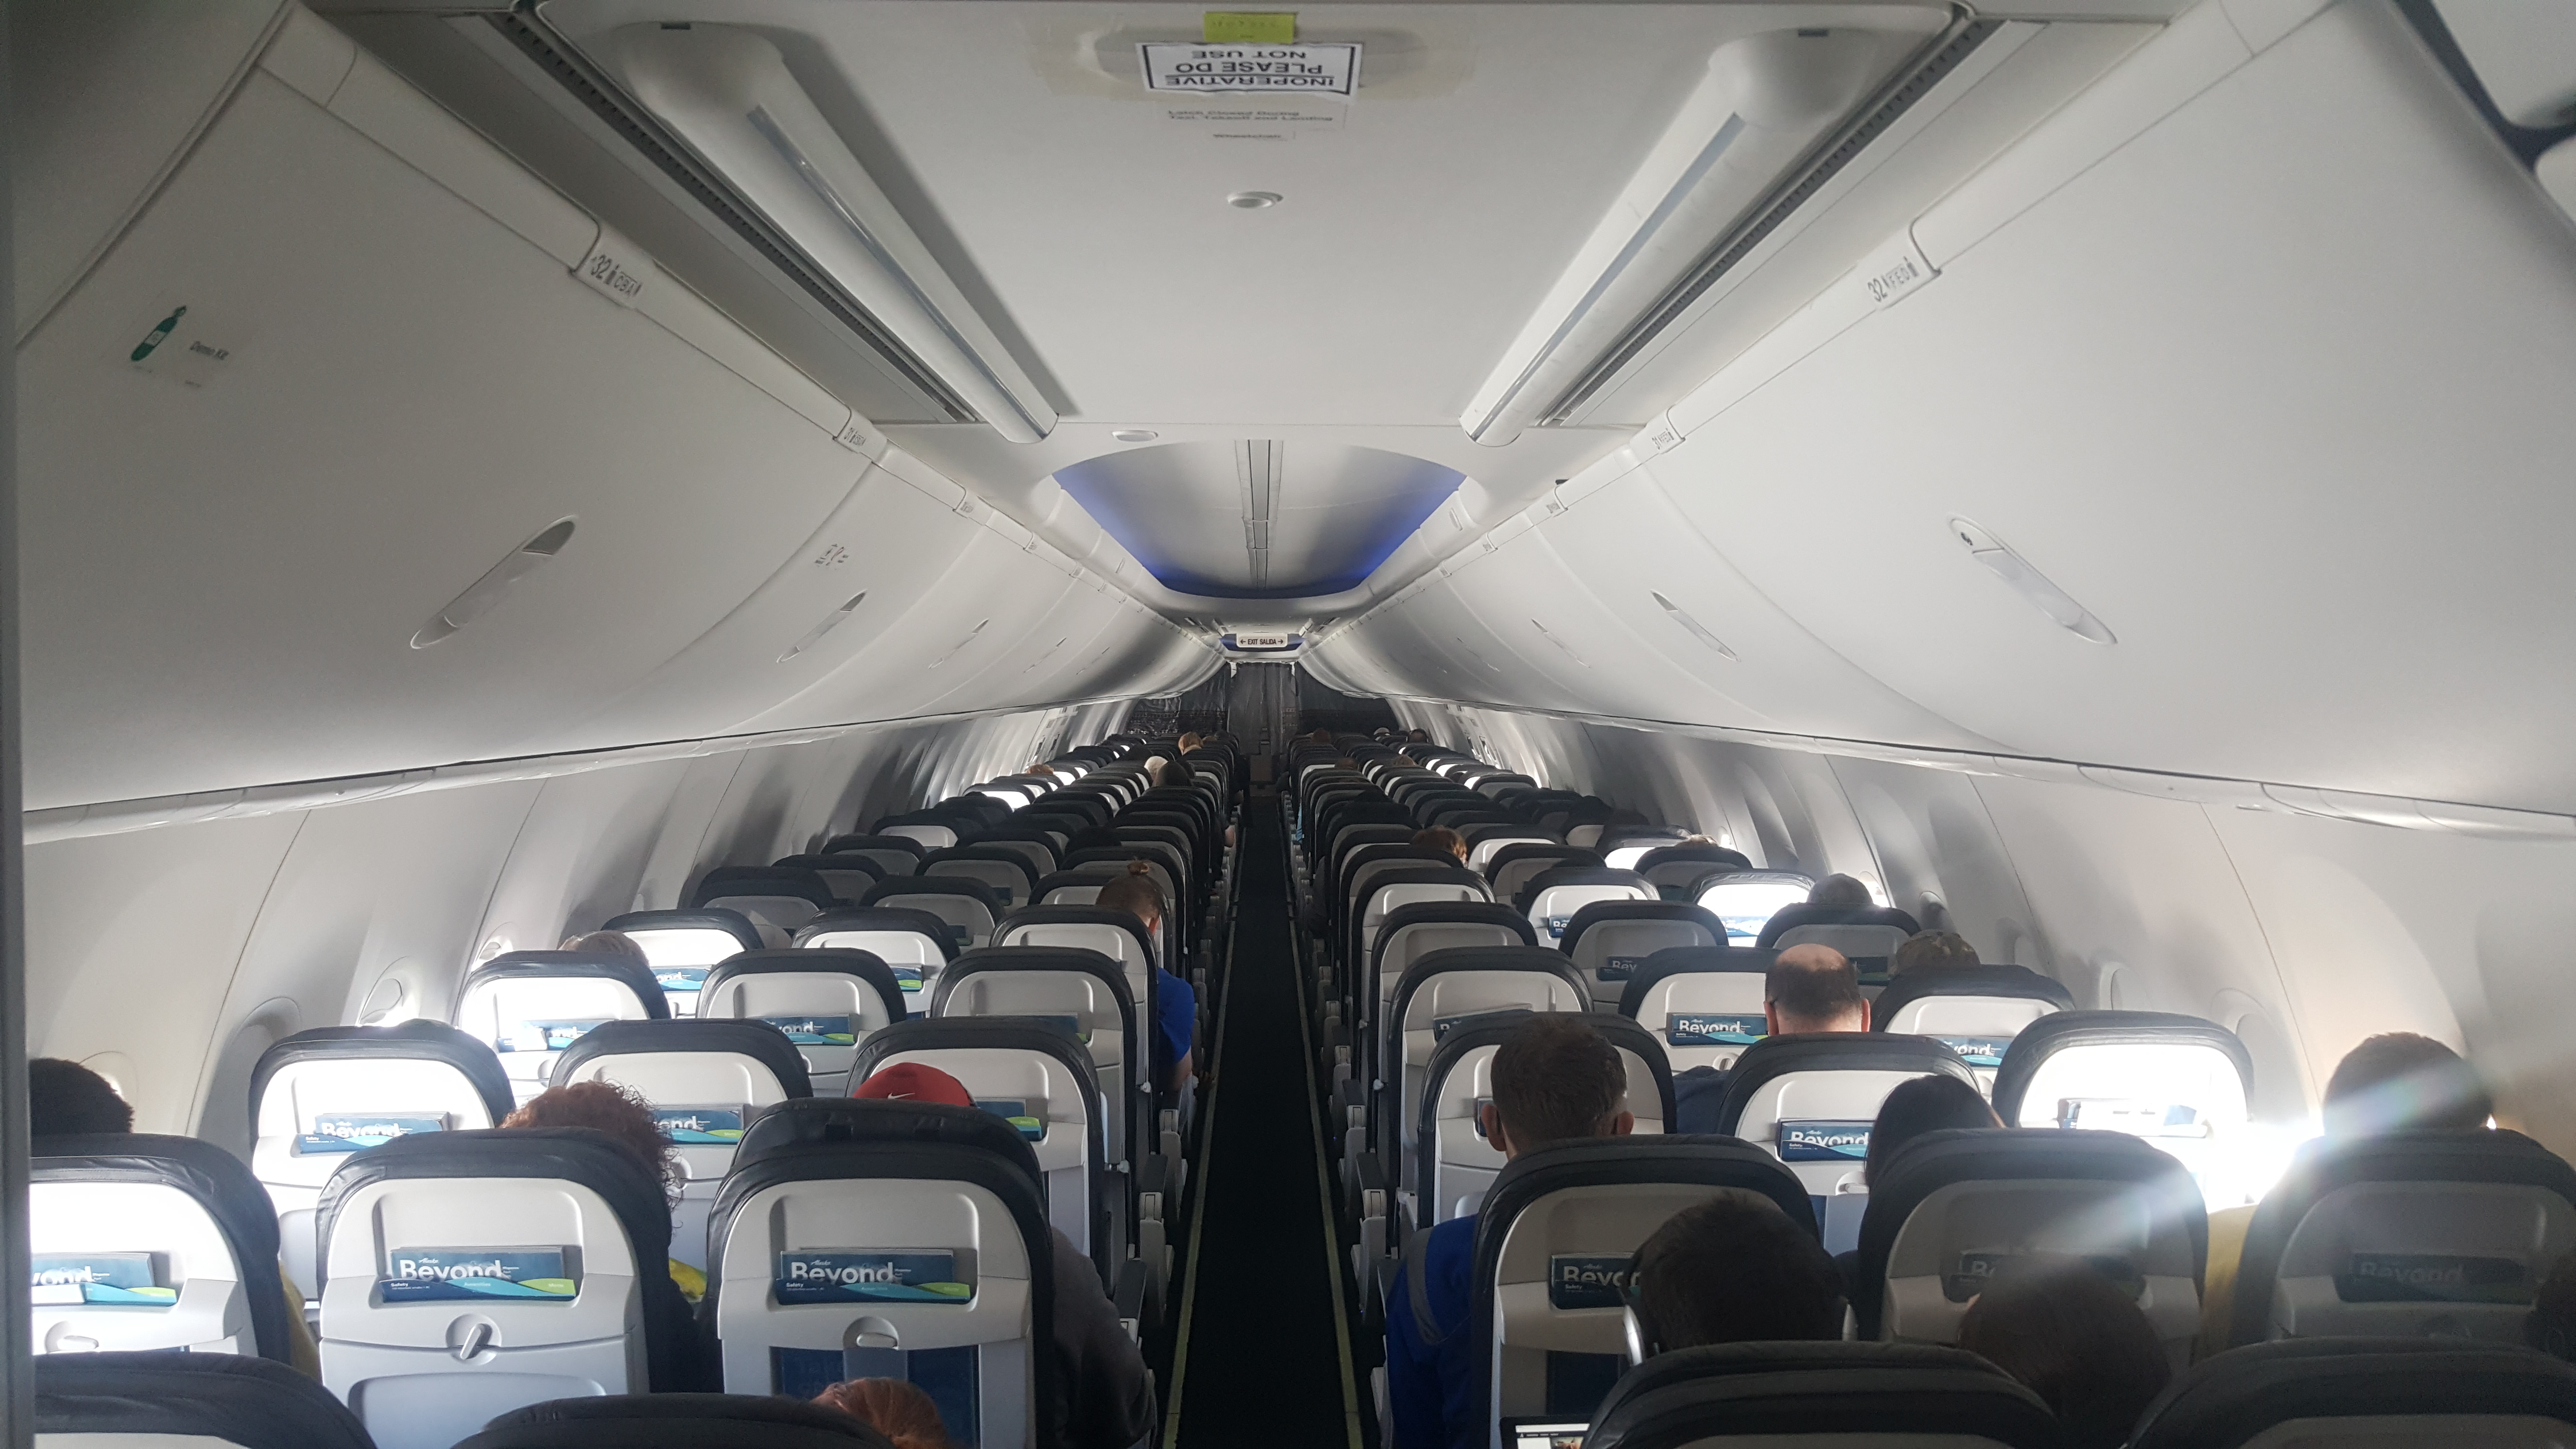 Alaska Airlines 737-900ER